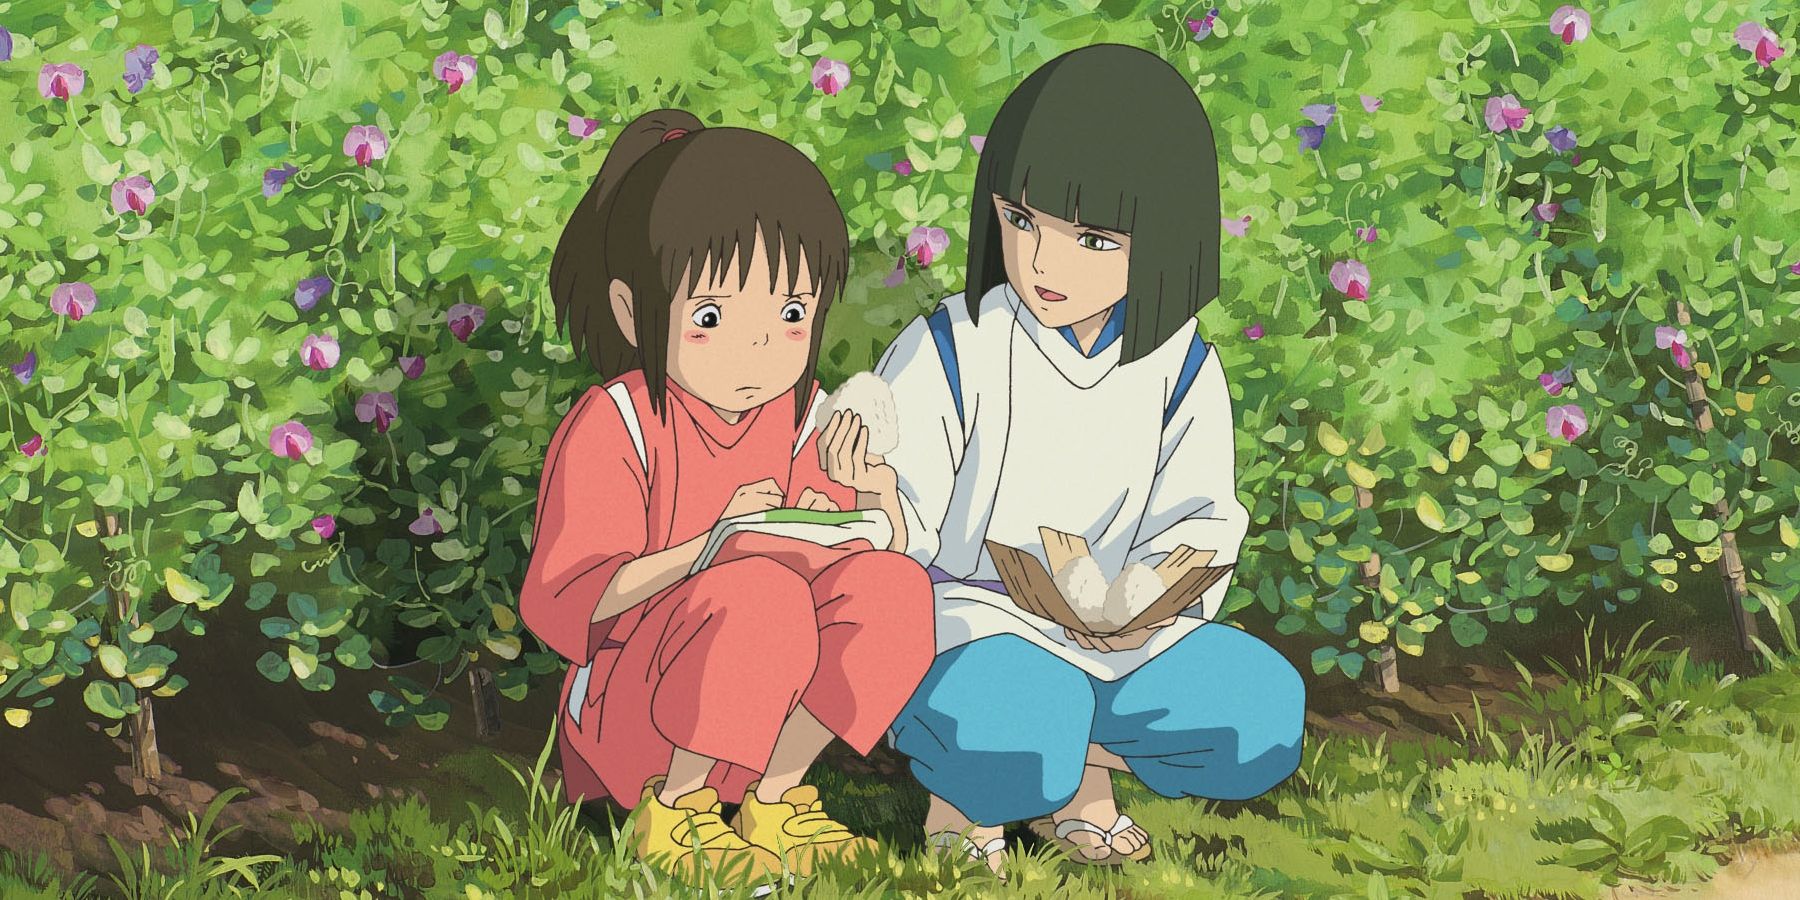 chihiro and haku sharing food